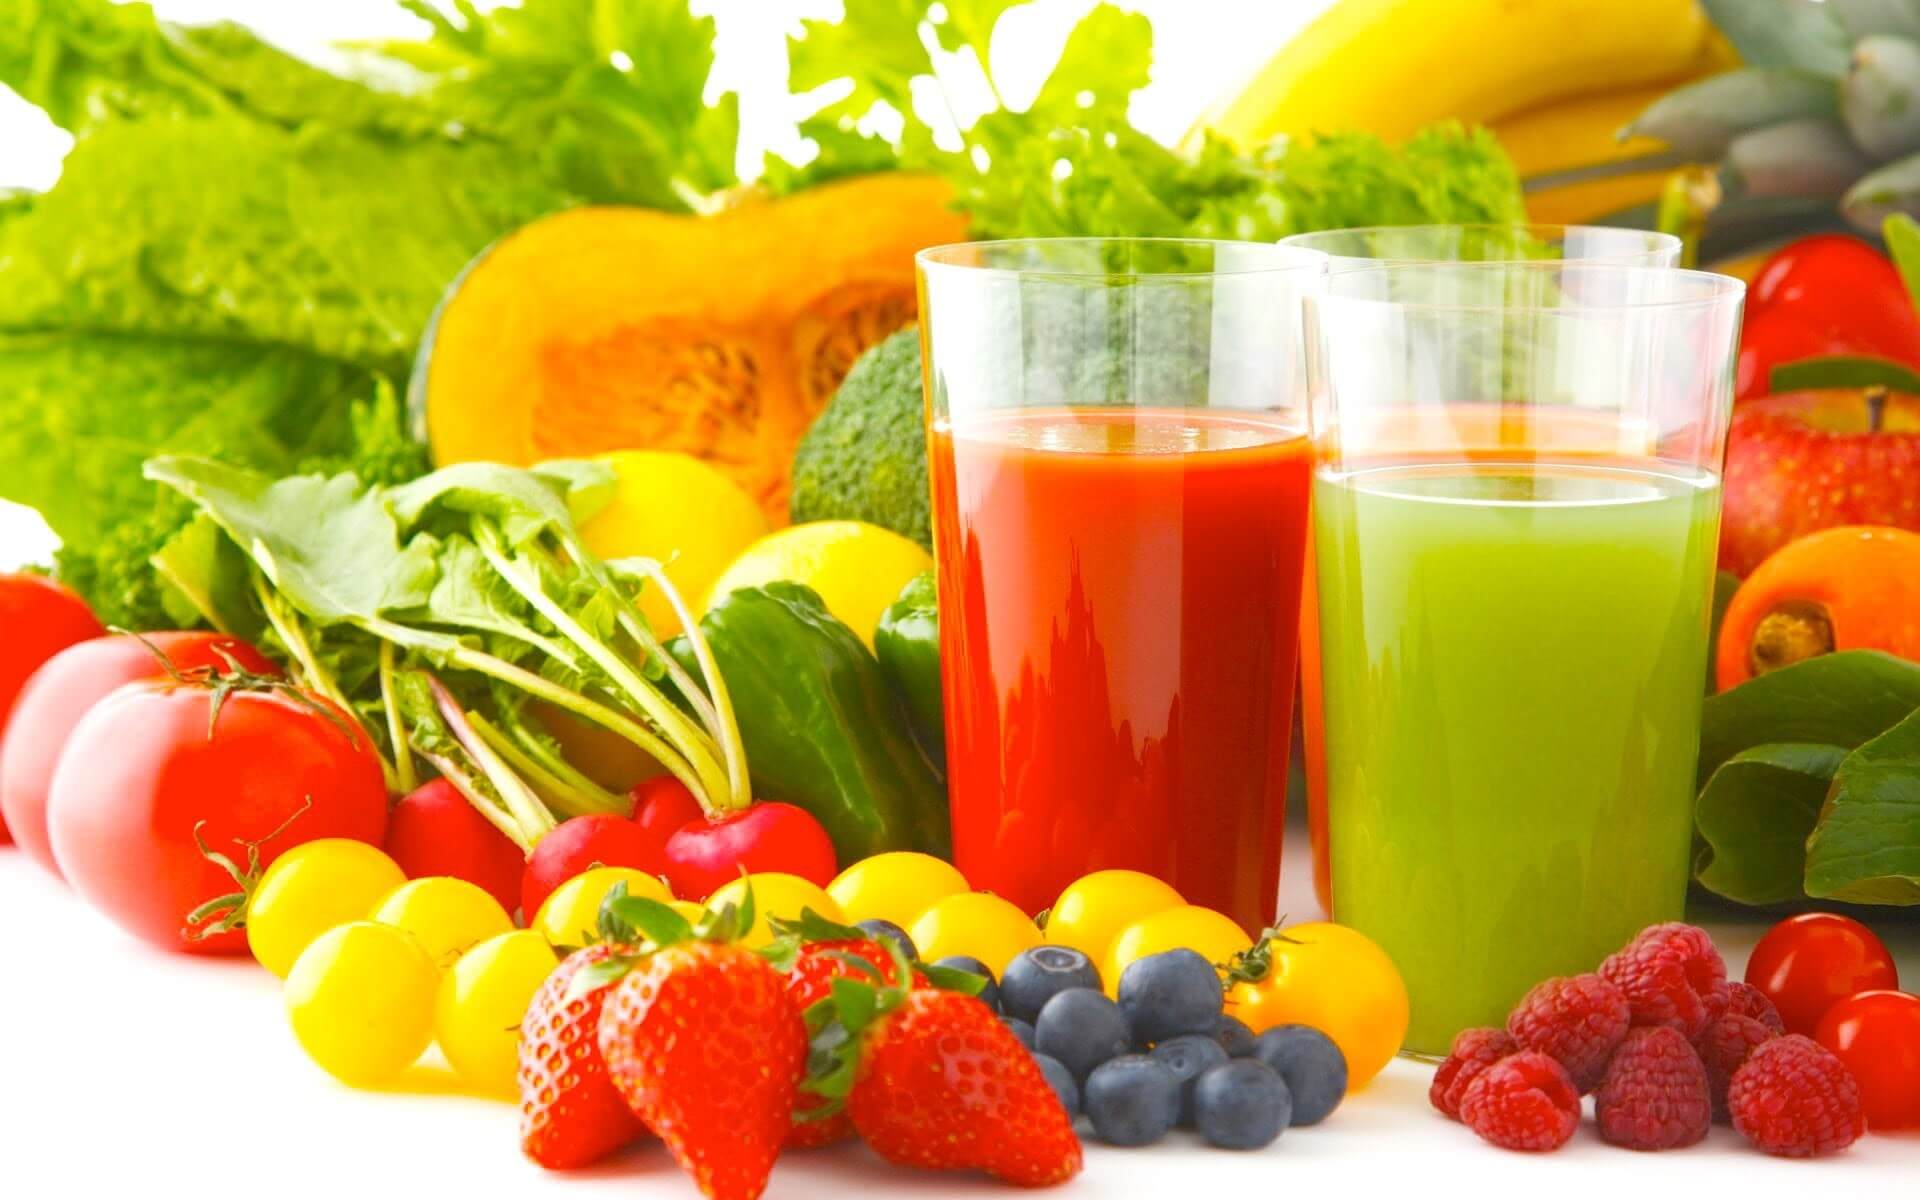 Bổ sung thêm hoa quả và rau củ để cung cấp vitamin và chất xơ cho bé